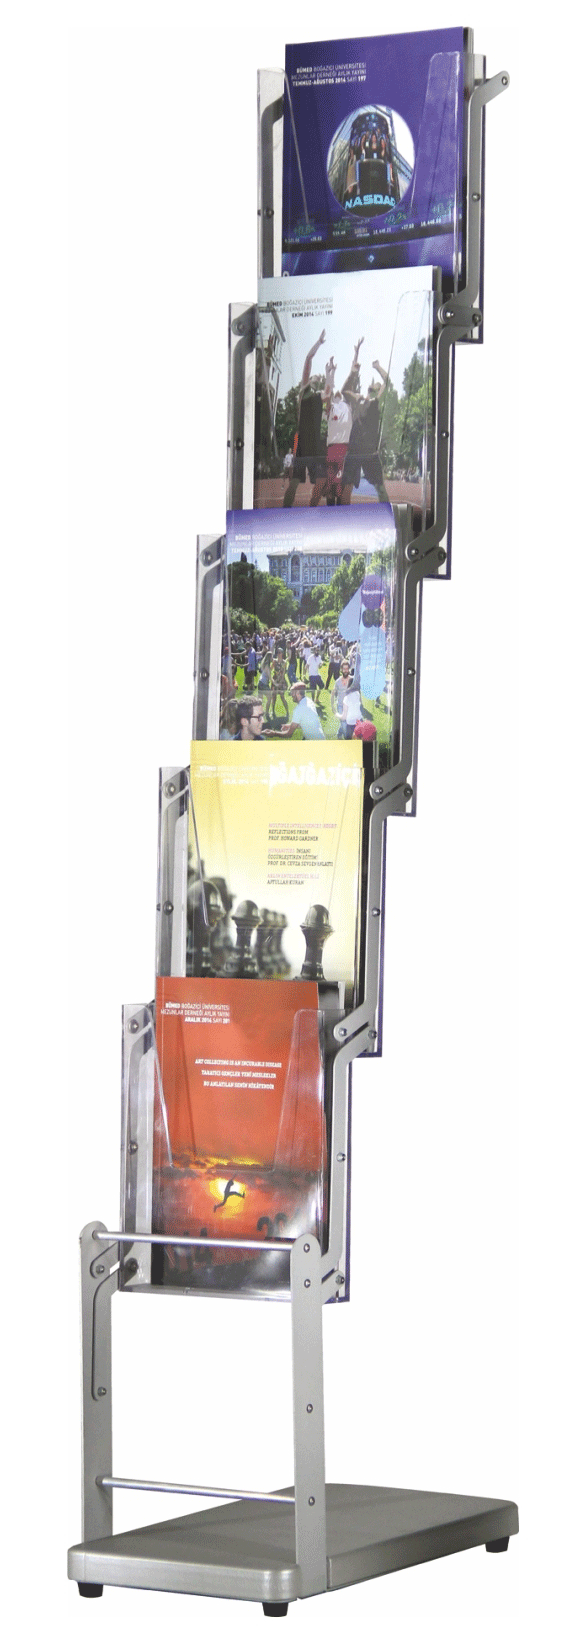 Porte brochure sur pied en forme de zig zag pour présnetation des documents